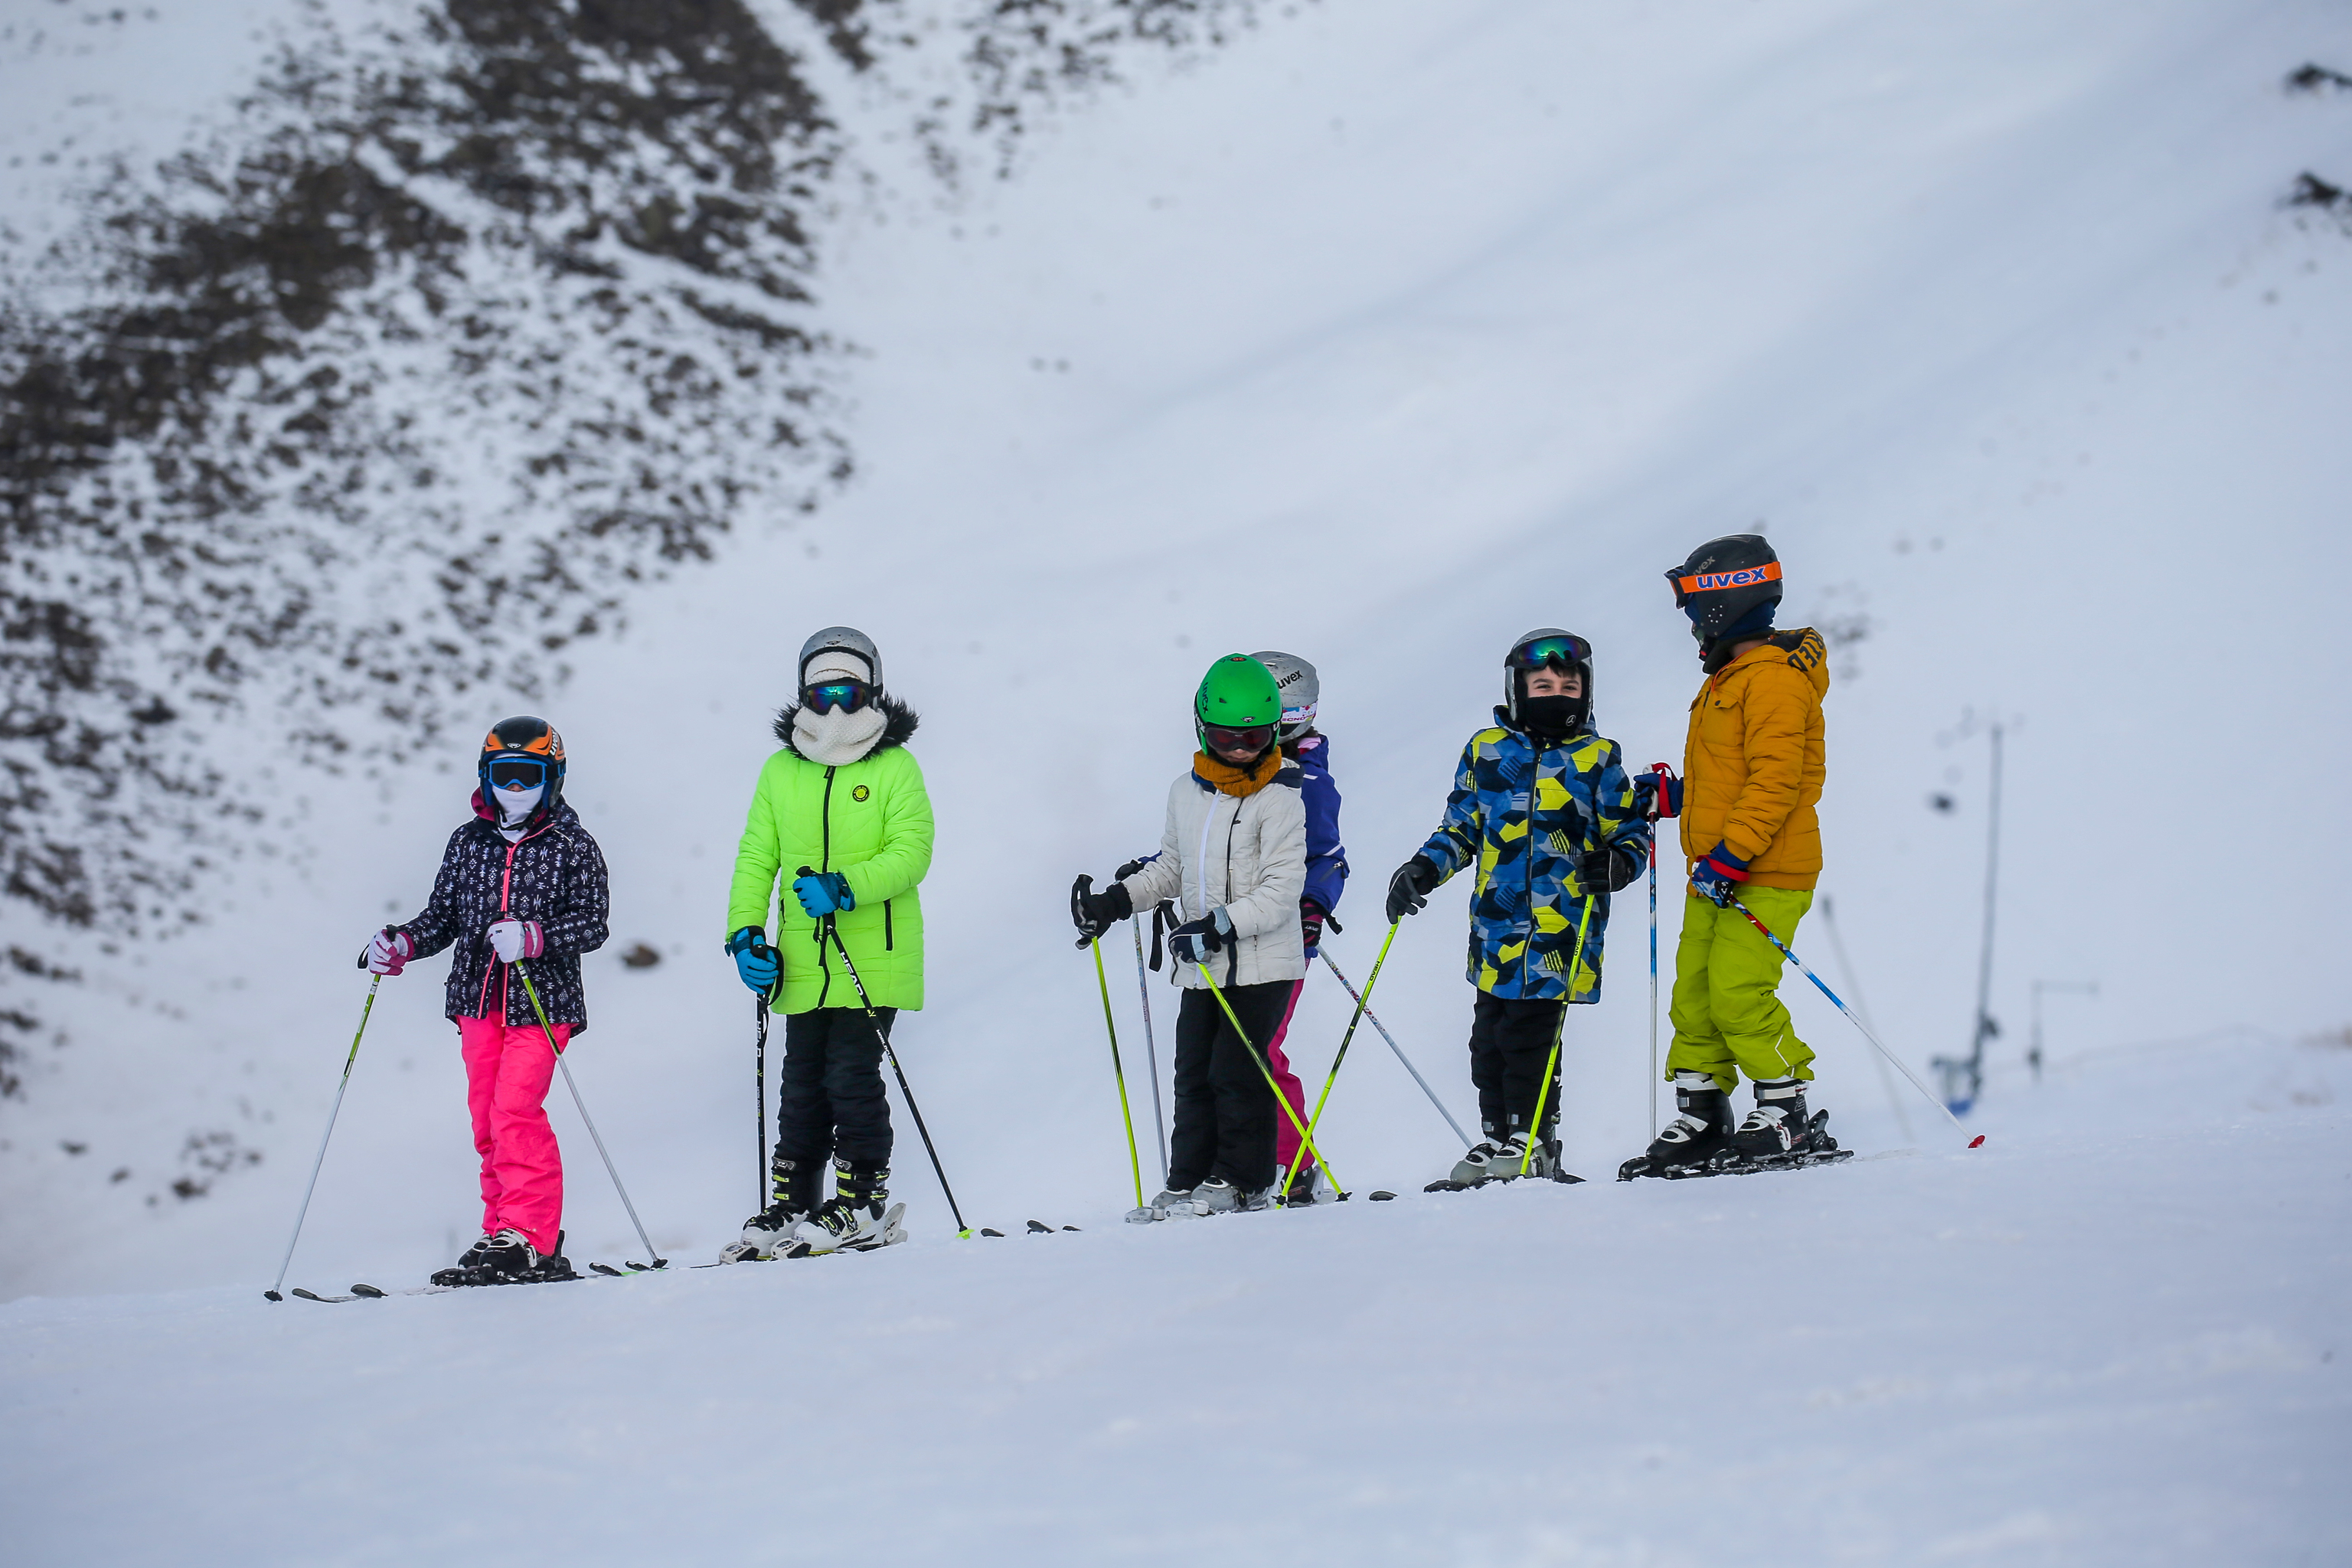 Un grupo de nios esquiando en Turqua.